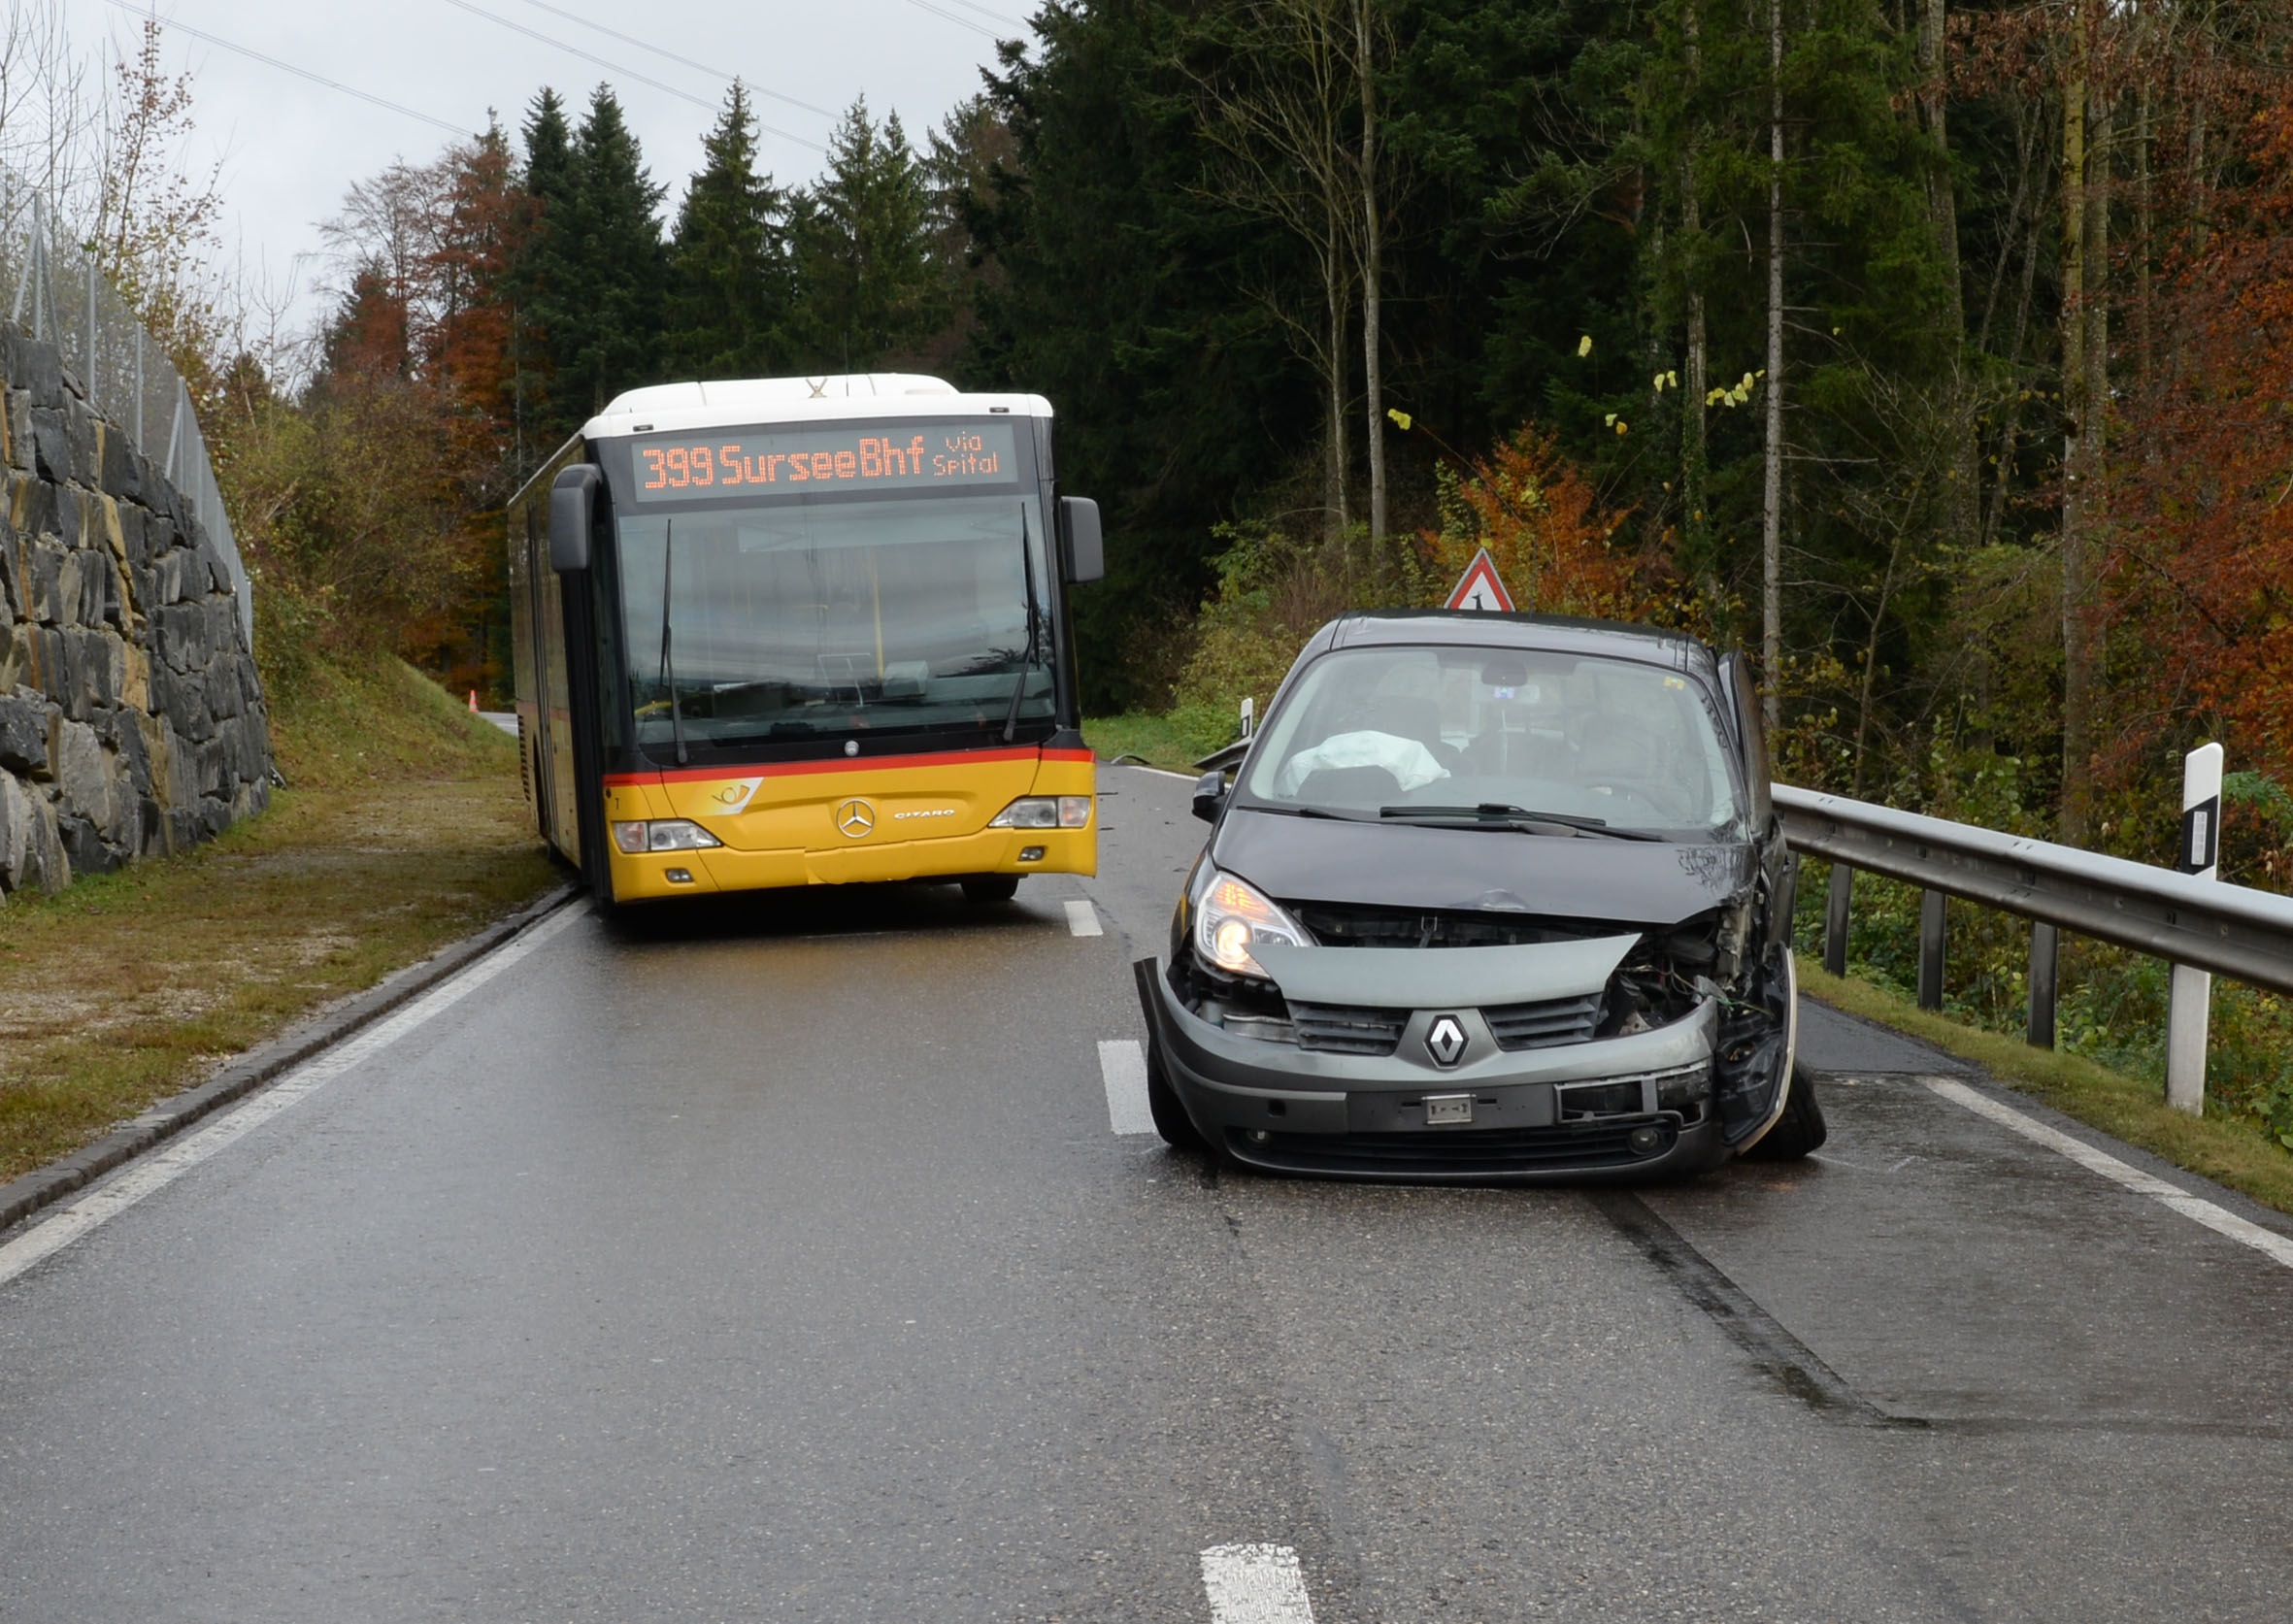 Drei Fahrzeuge kollidierten bei Schenkon in Luzern, verletzt wurde niemand.